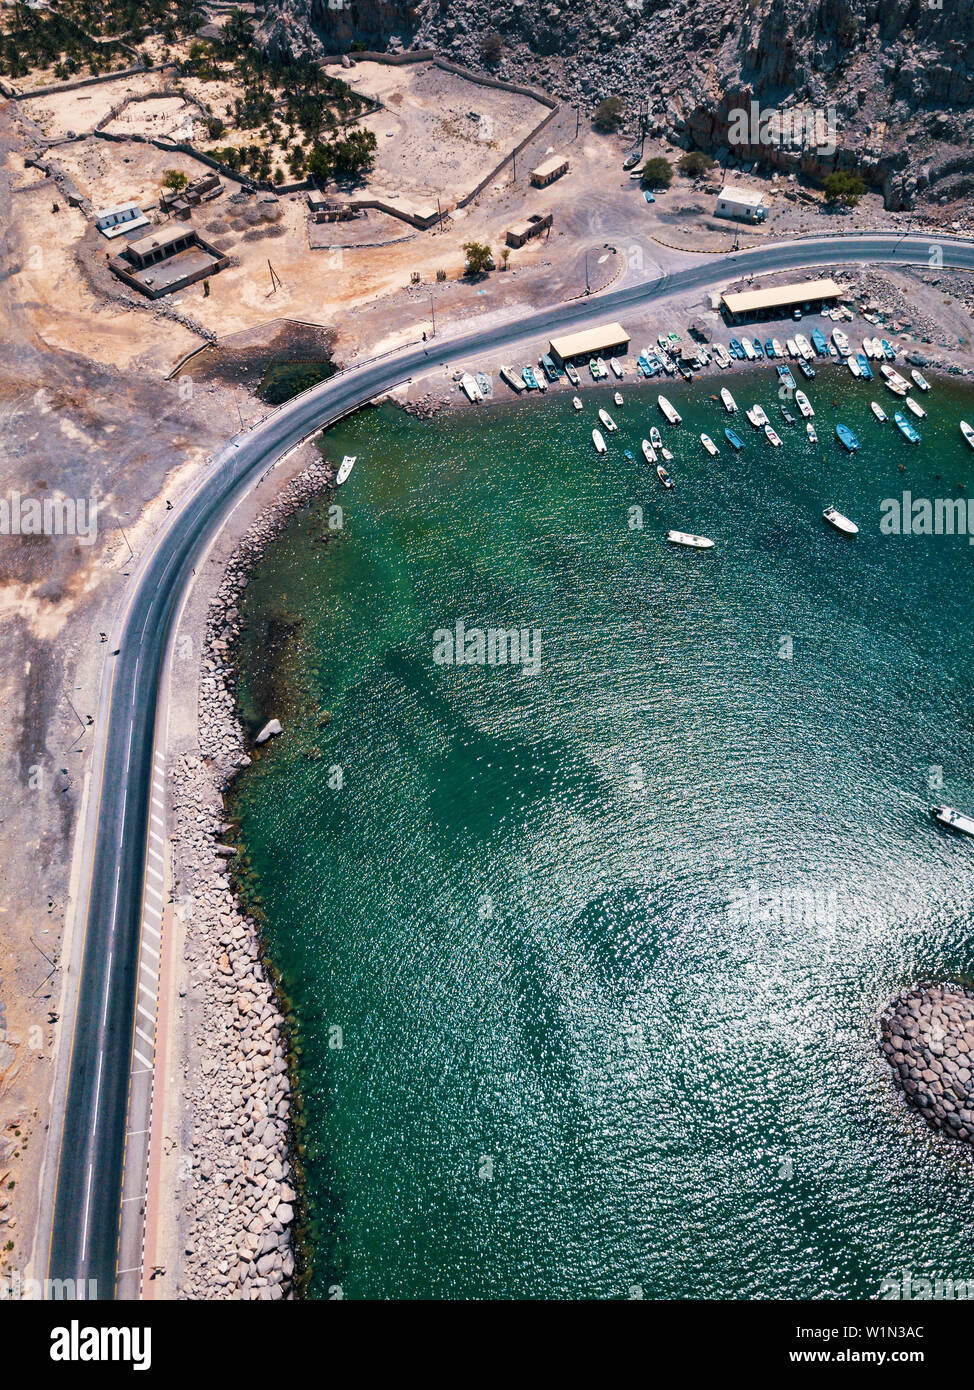 Malerische Küstenstraße und Fjorde von Musandam Oman Luftaufnahme Stockfoto